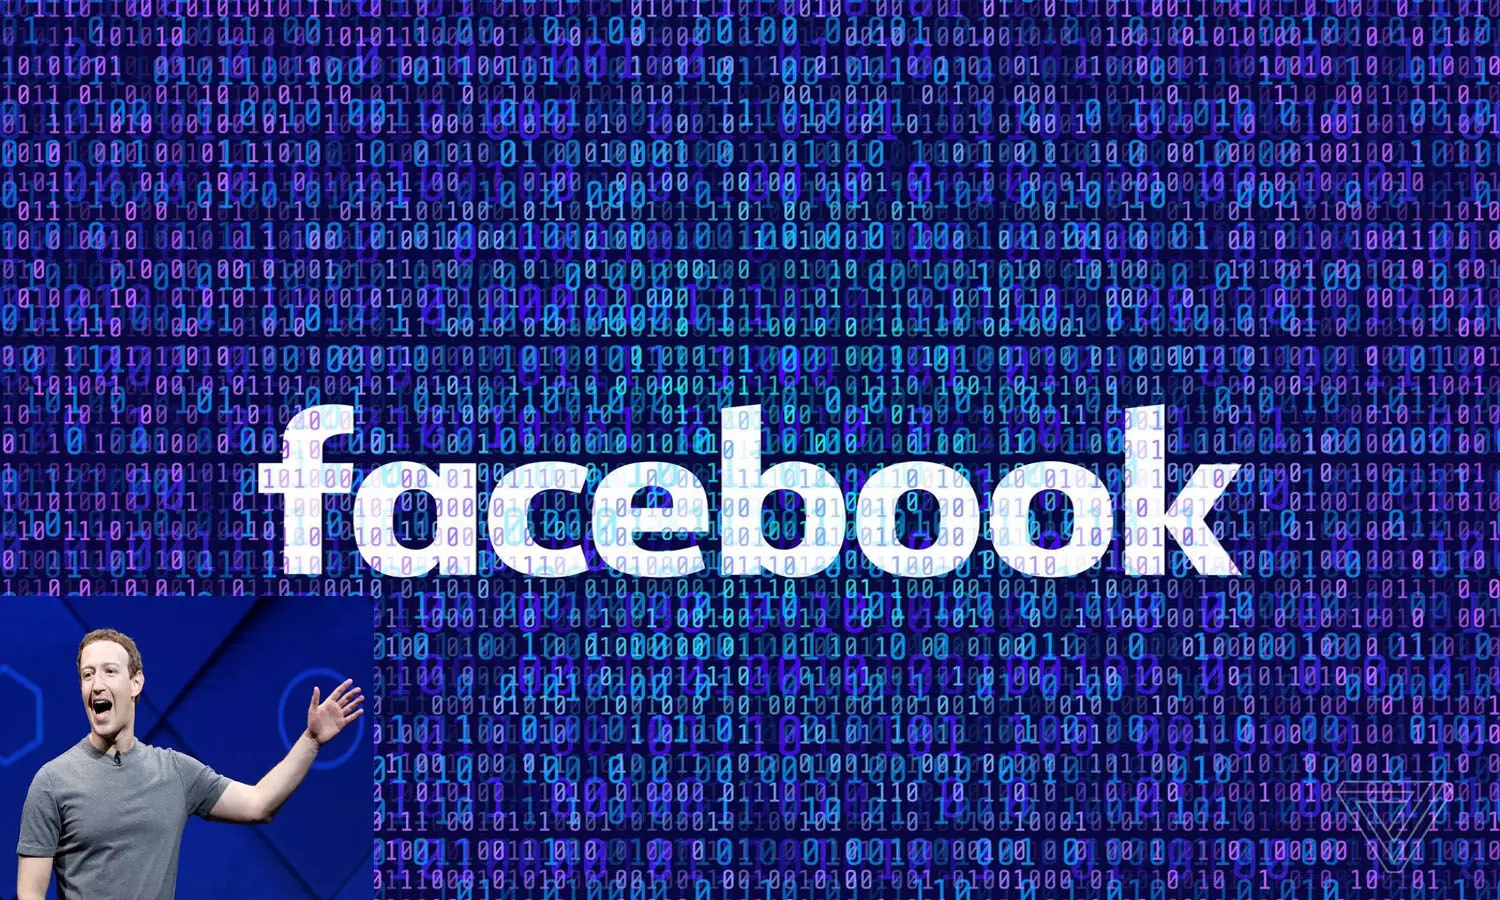 Facebook Face Recognition System: फेसबुक बंद करने जा रहा अपना फेस रिकग्निशन सिस्टम, डिलीट करेगा 1 अरब से ज्यादा लोगों का डाटा